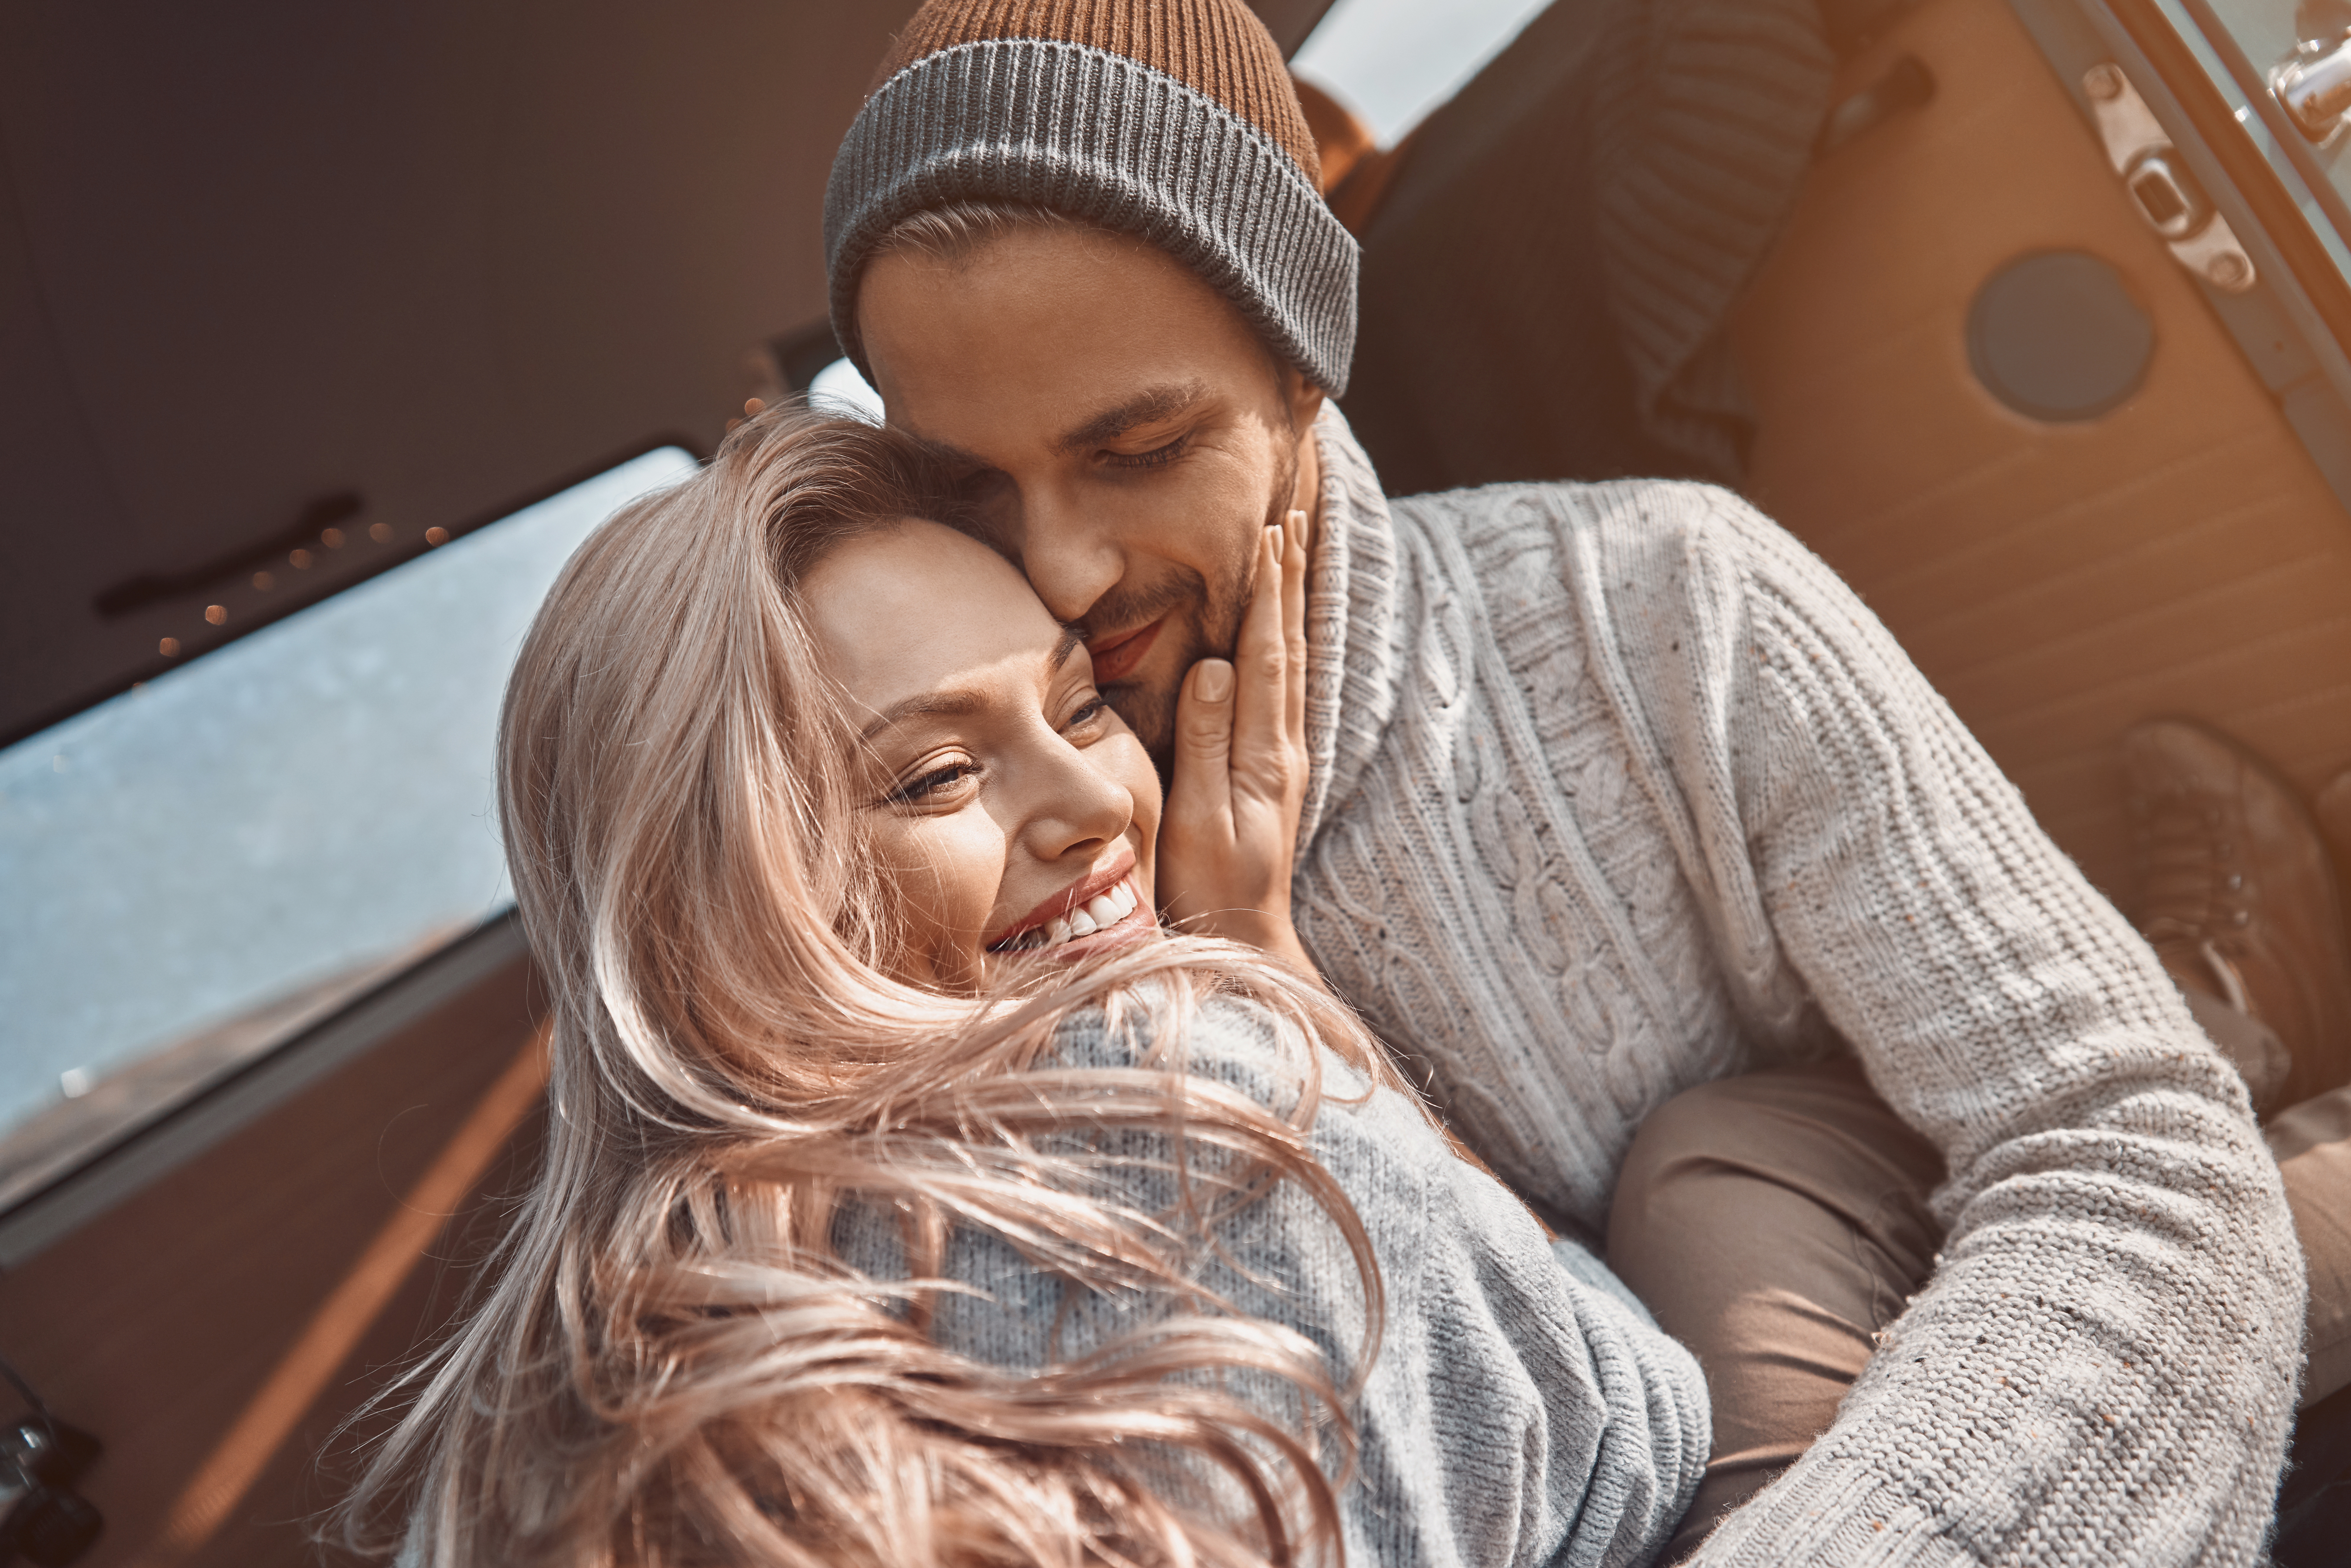 Una pareja abrazada en una autocaravana | Fuente: Shutterstock